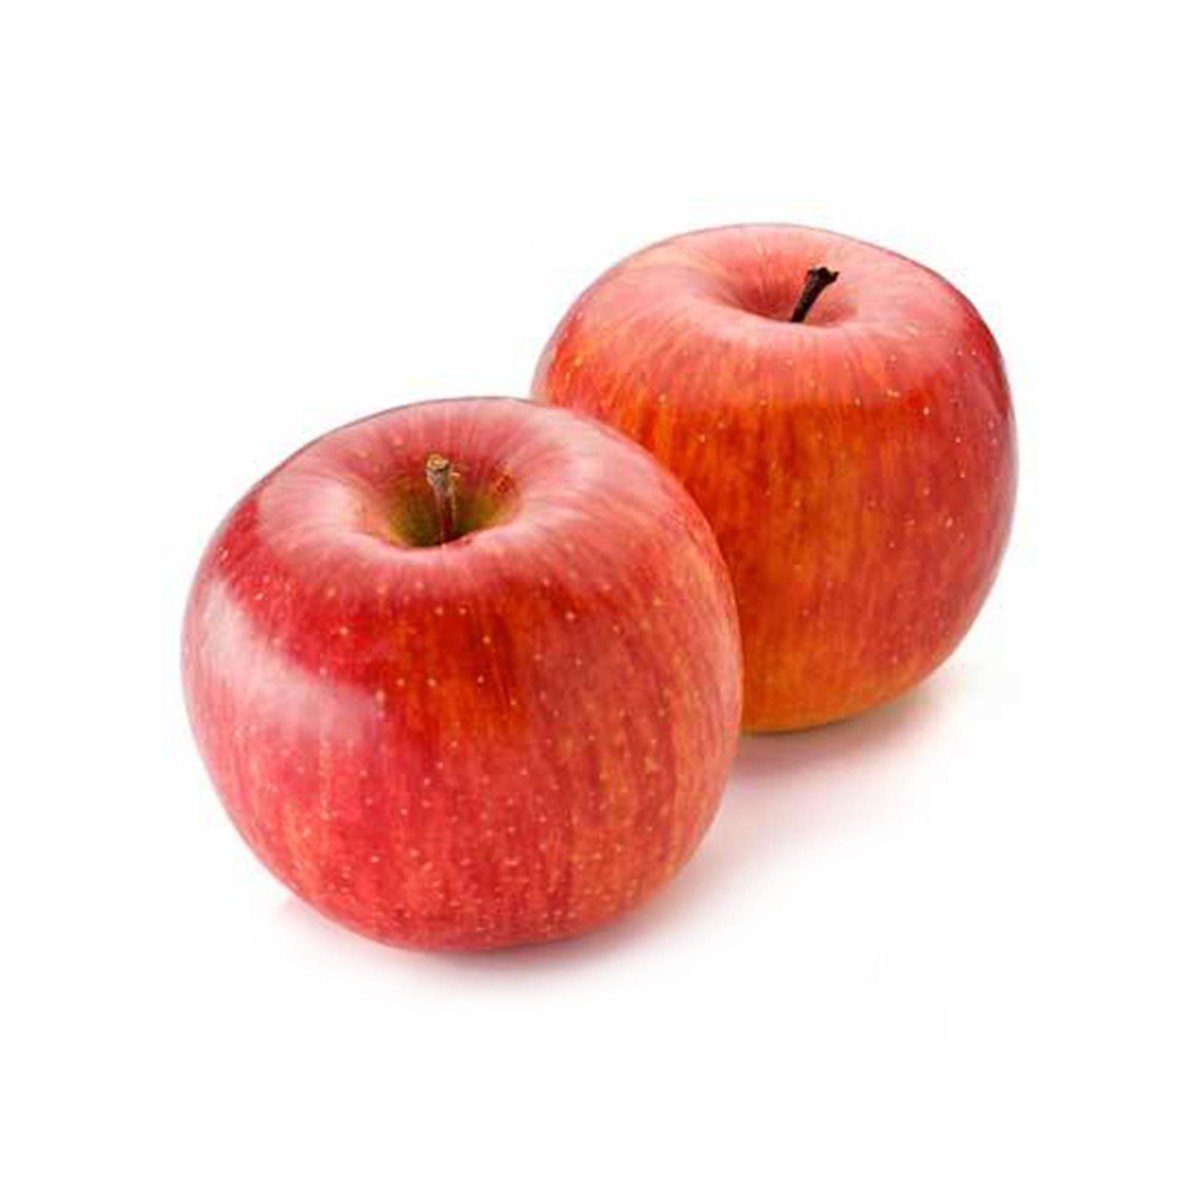 اشتري قم بشراء تفاح أحمر إيراني صندوق صغير Online at Best Price من الموقع - من لولو هايبر ماركت Apples في الامارات